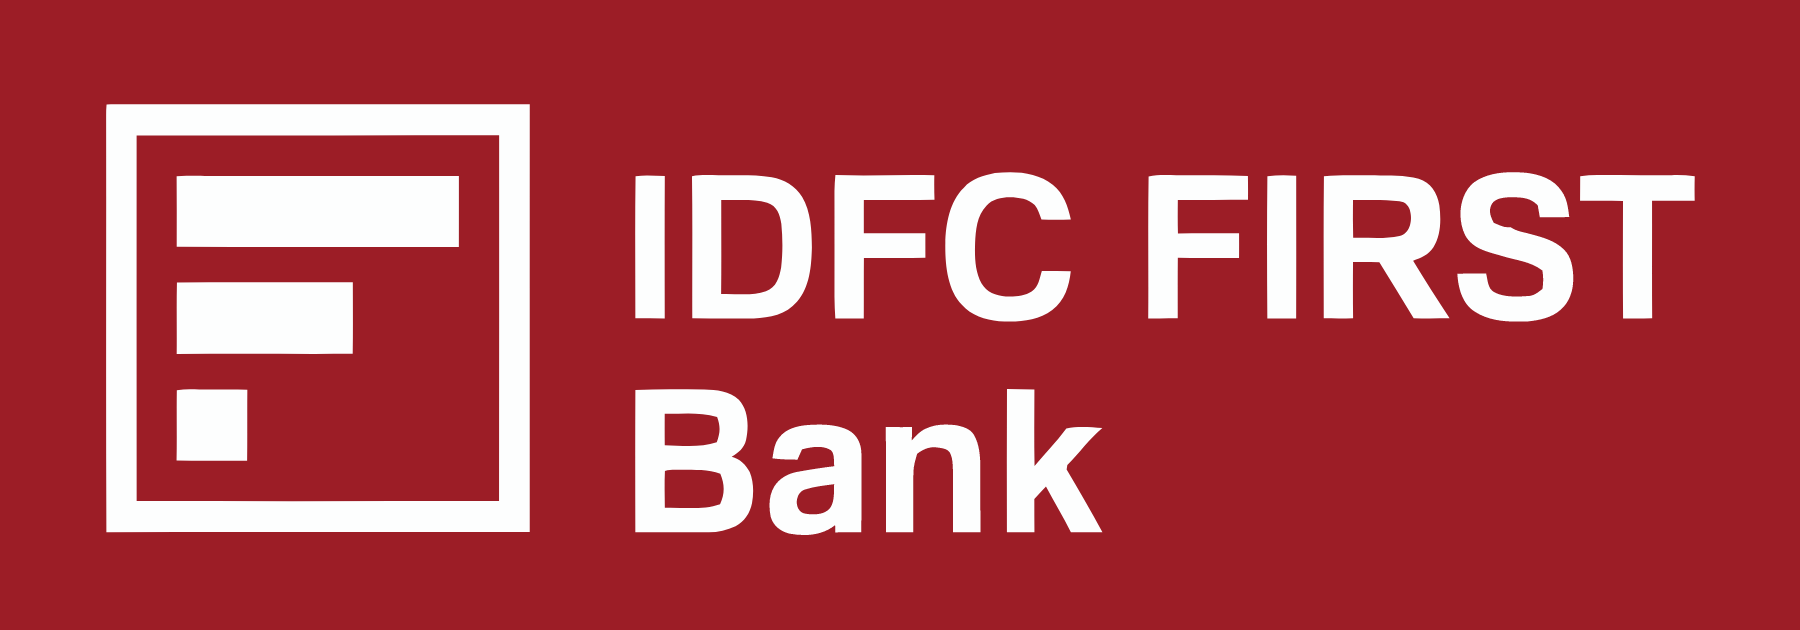 IDFC FIRST Bank
 logo large (transparent PNG)